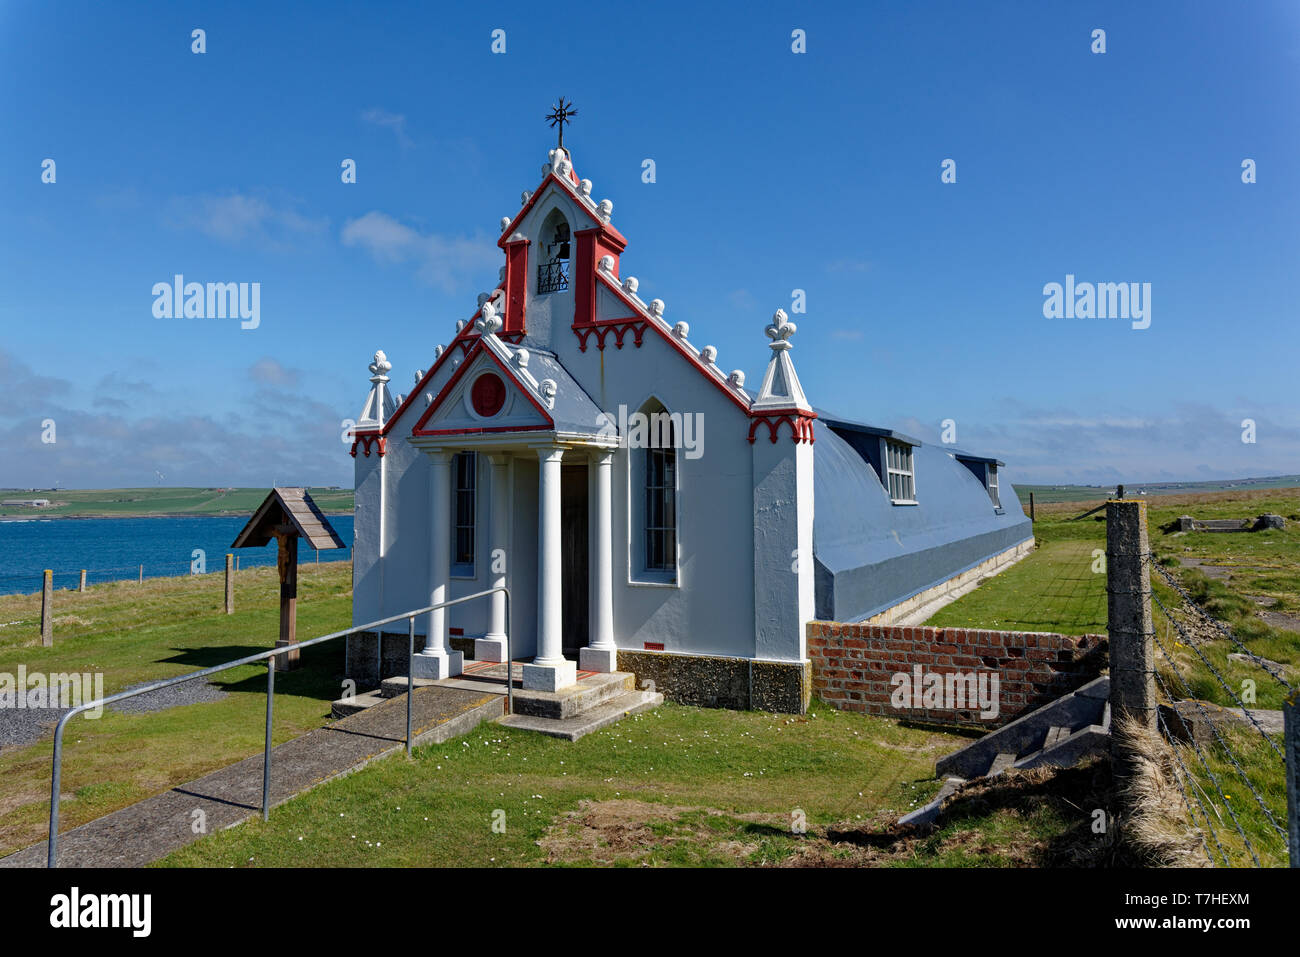 Die italienischen Kapelle ist ein umgebautes Nissen Hütte auf der kleinen Insel Lamm Holm in Orkney an der Nordküste von Schottland. Der Kriegsgefangenen gebaut. Stockfoto